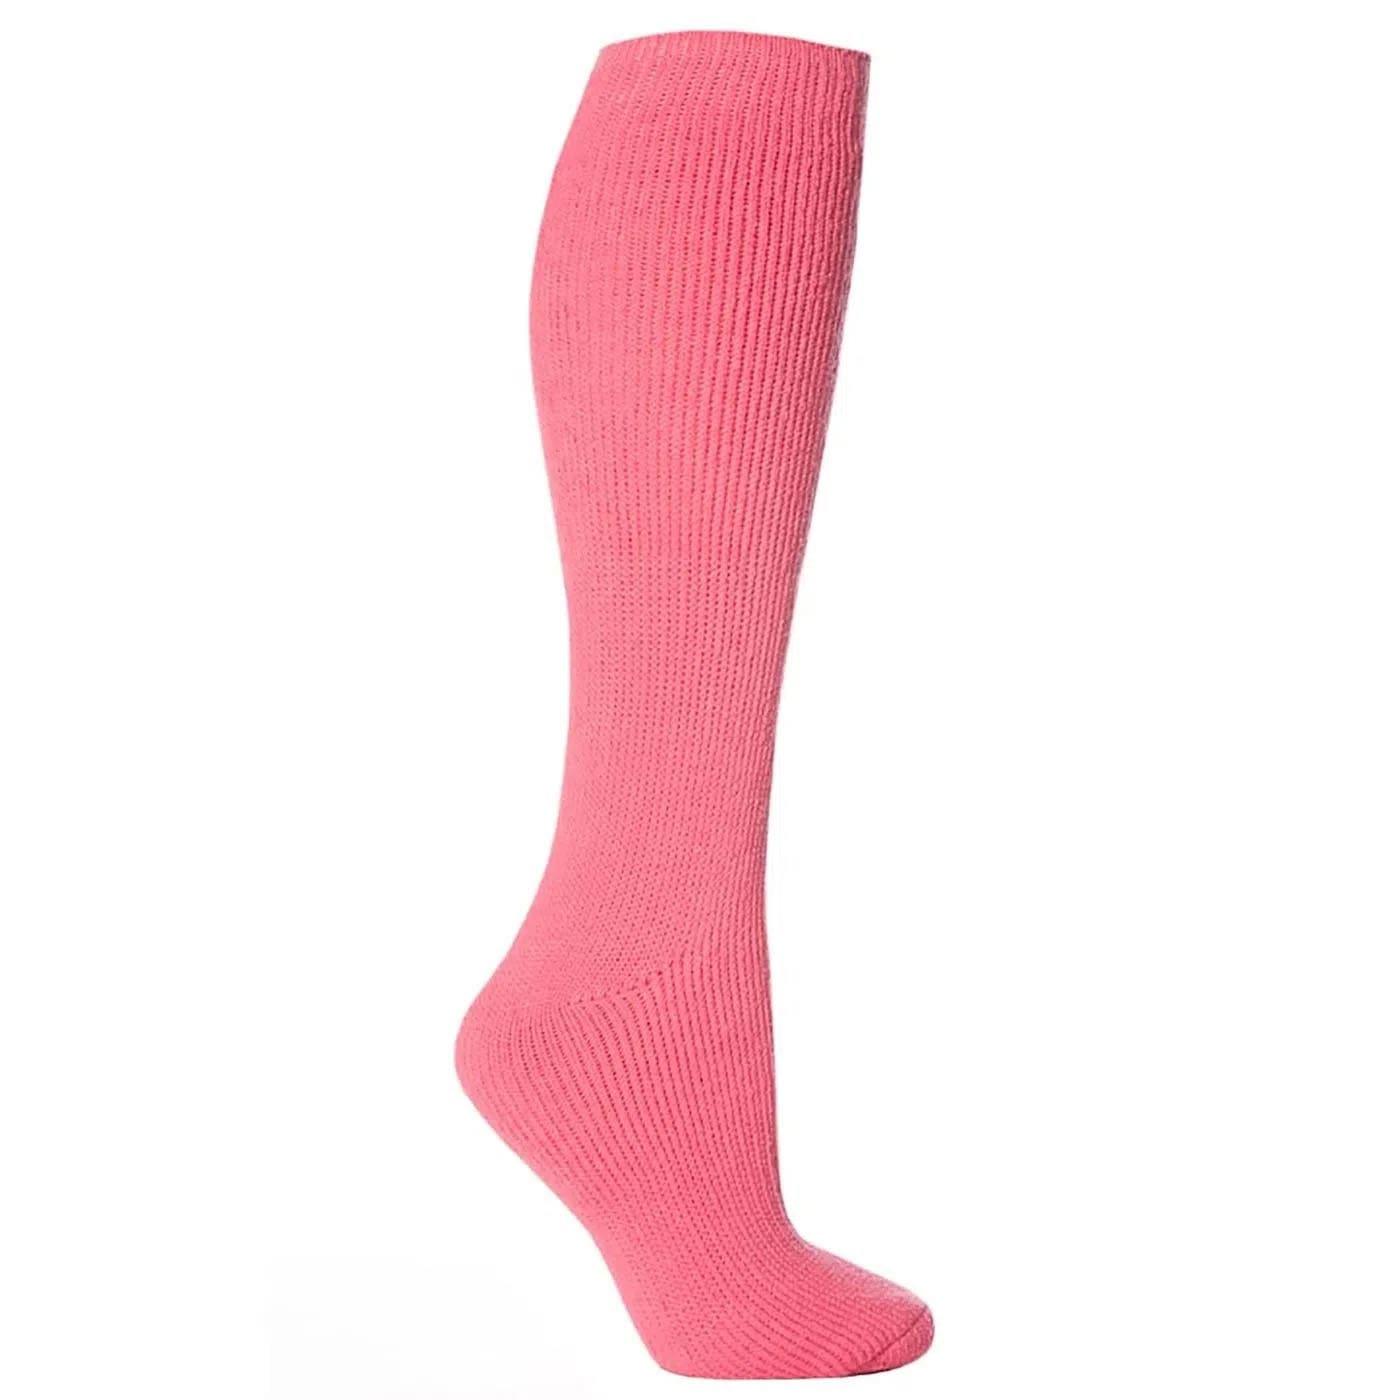 meia longa rosa claro térmica feminina para frio extremo